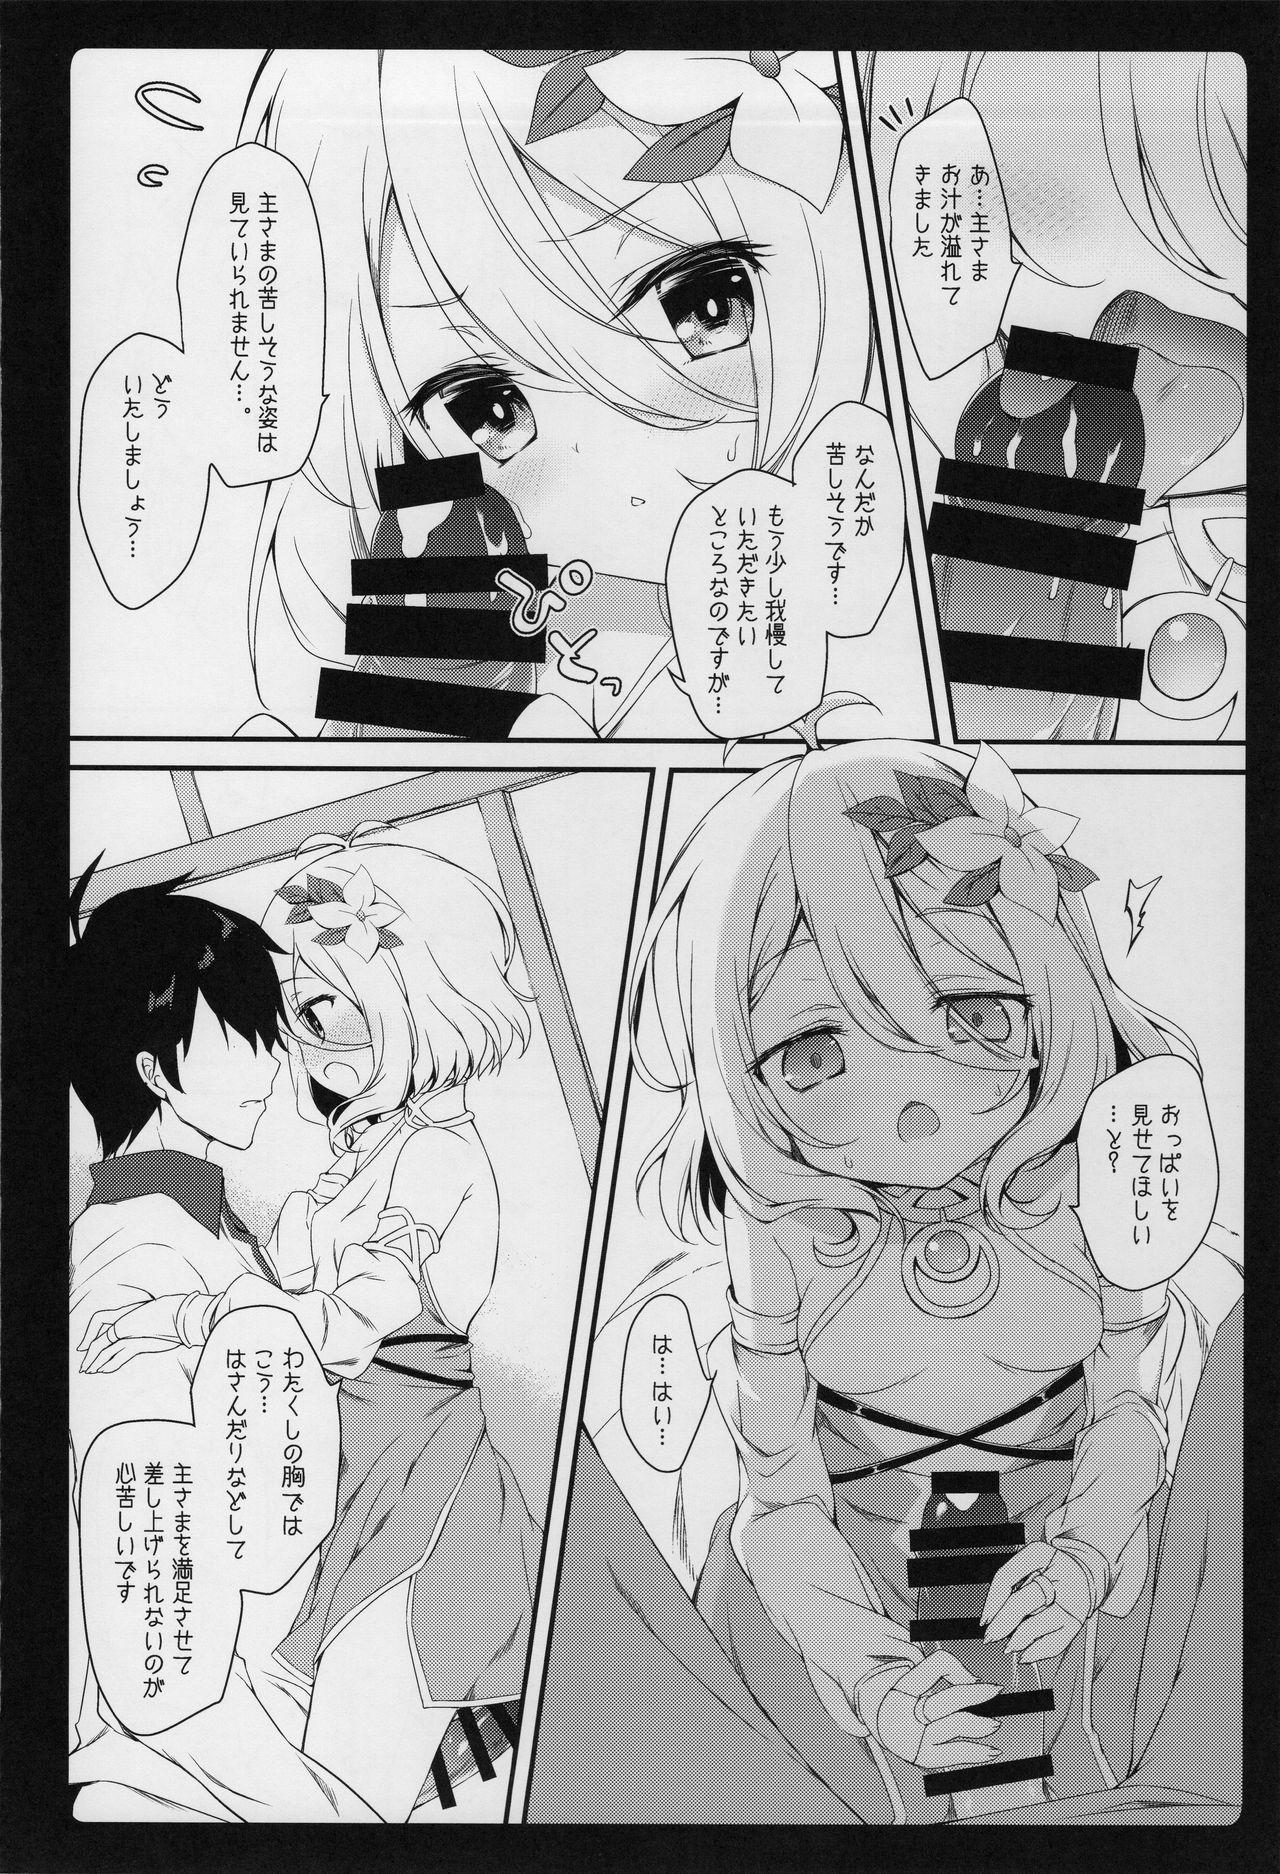 Fun Daisuki Kokkoro-chan - Princess connect Police - Page 9